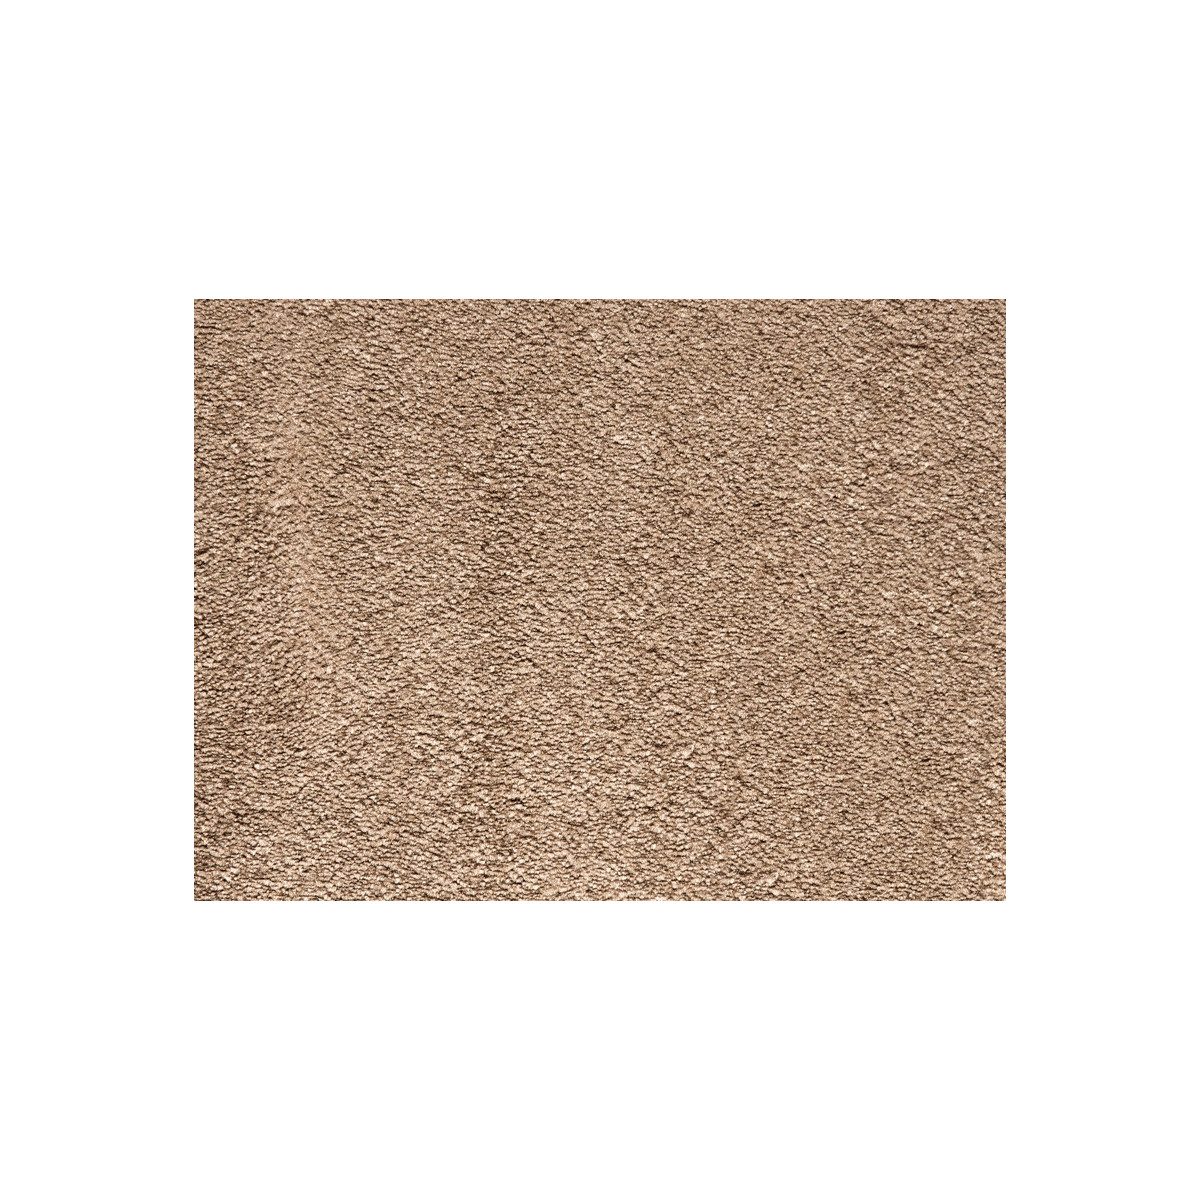 Metrážový koberec Tagil / 10431 hnědý